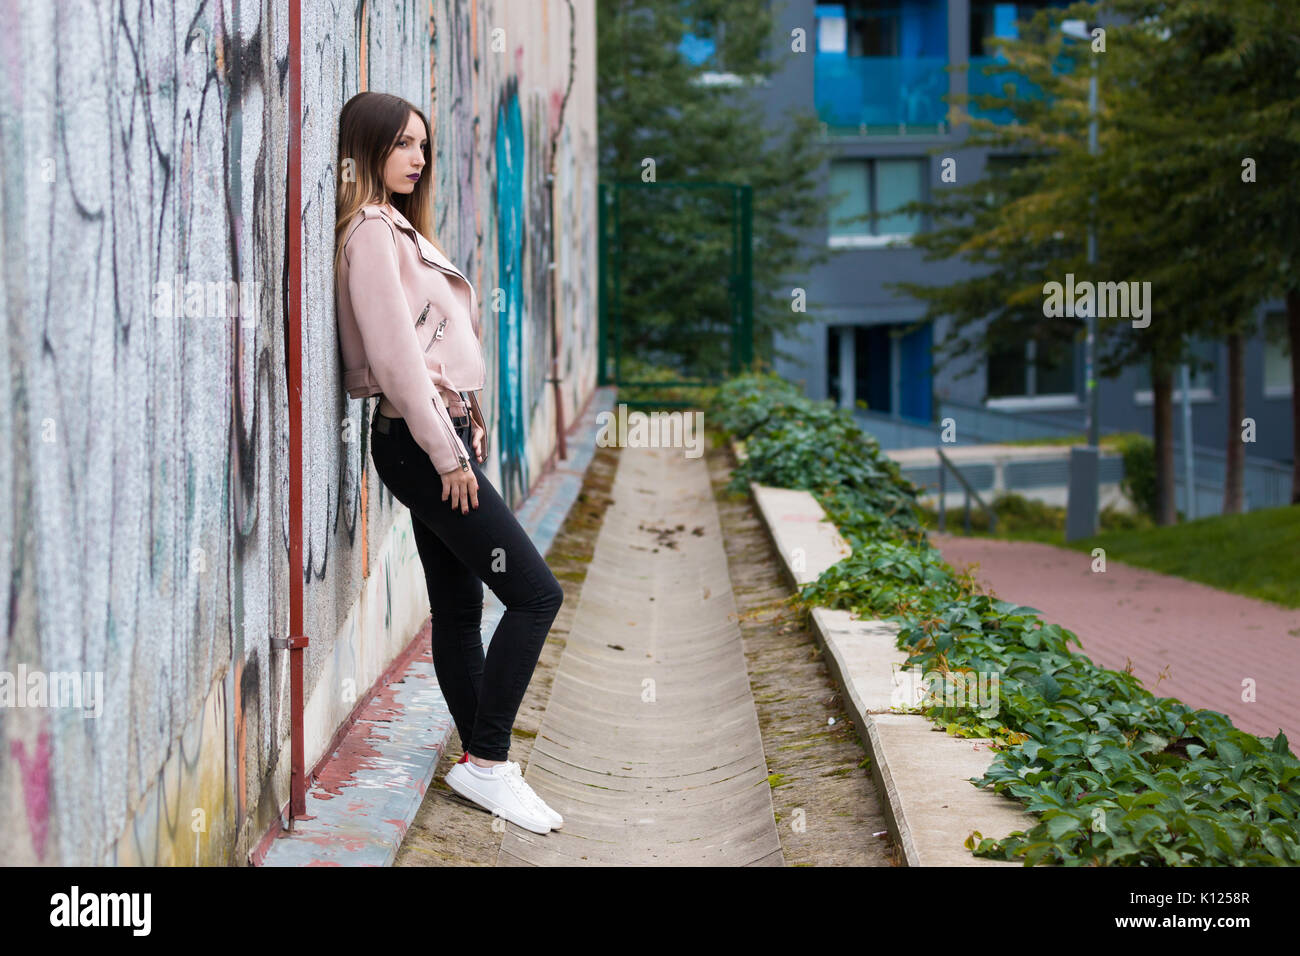 Portrait de jeune fille à la mode informel sur le graffiti wall background Banque D'Images